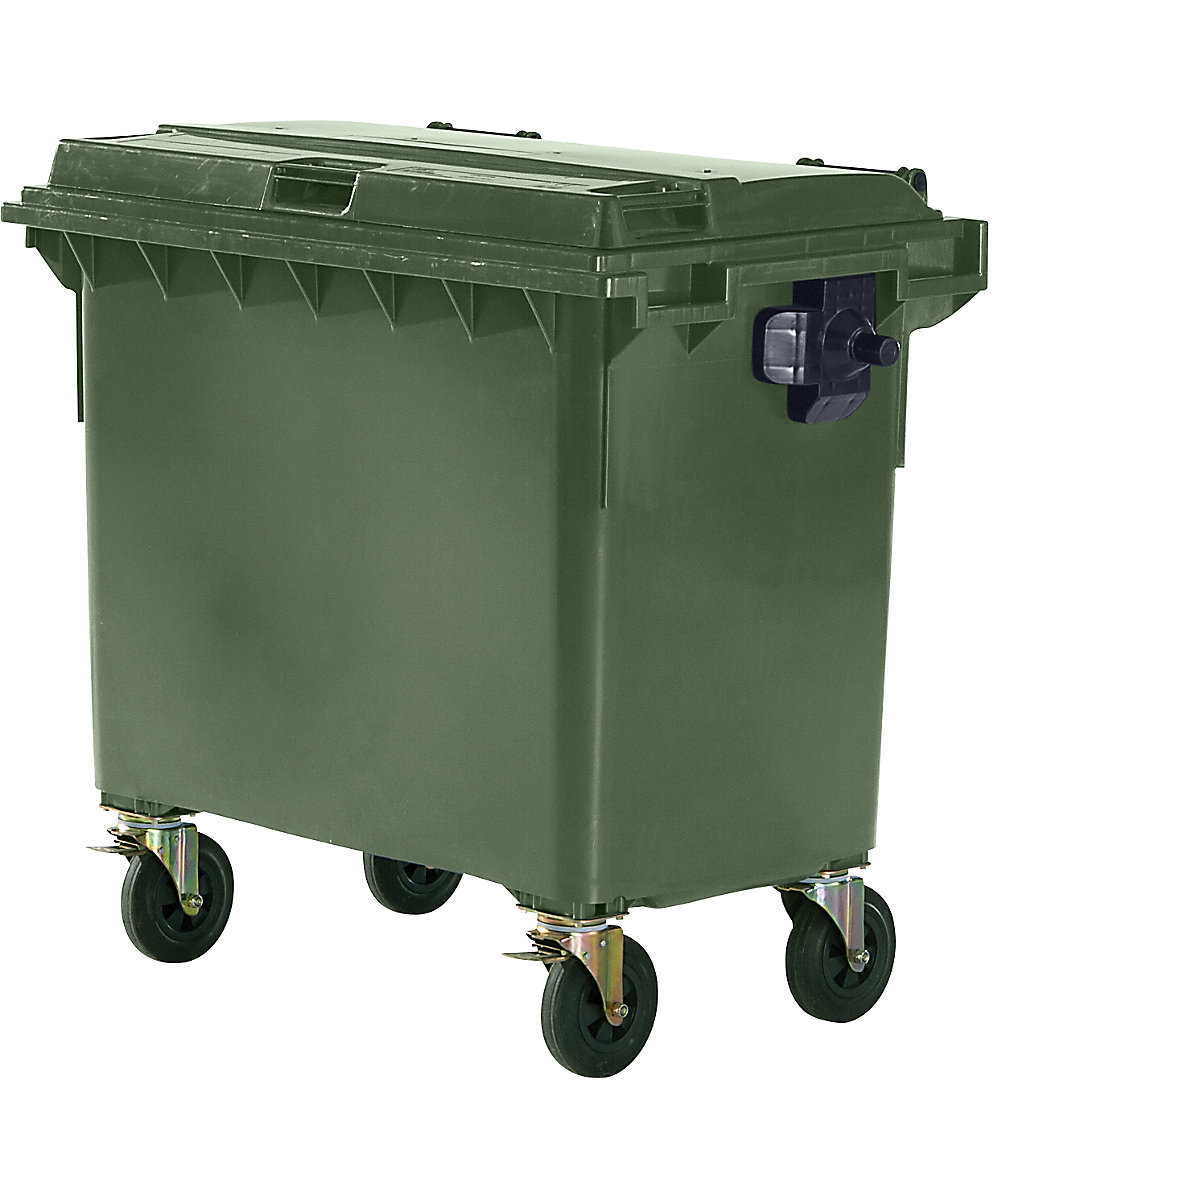 Conteneur à ordures en plastique conforme DIN EN 840, capacité 660 l, l x h x p 1360 x 1235 x 765 mm, vert, 5 pièces et +-4